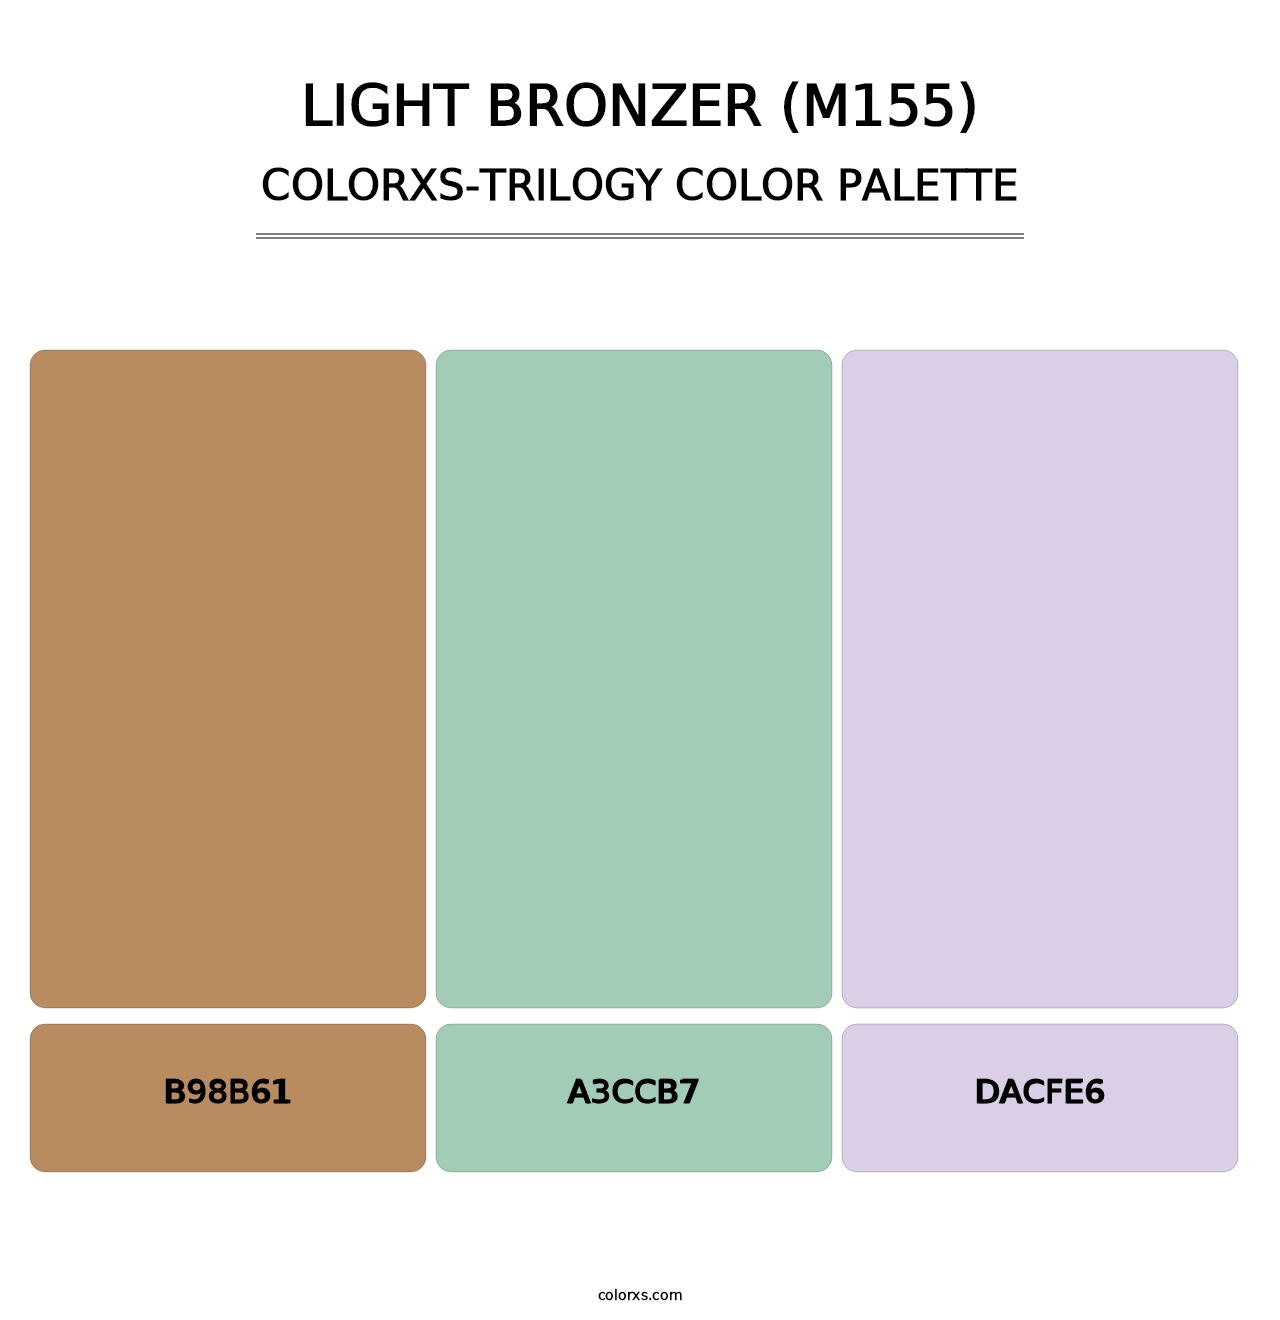 Light Bronzer (M155) - Colorxs Trilogy Palette